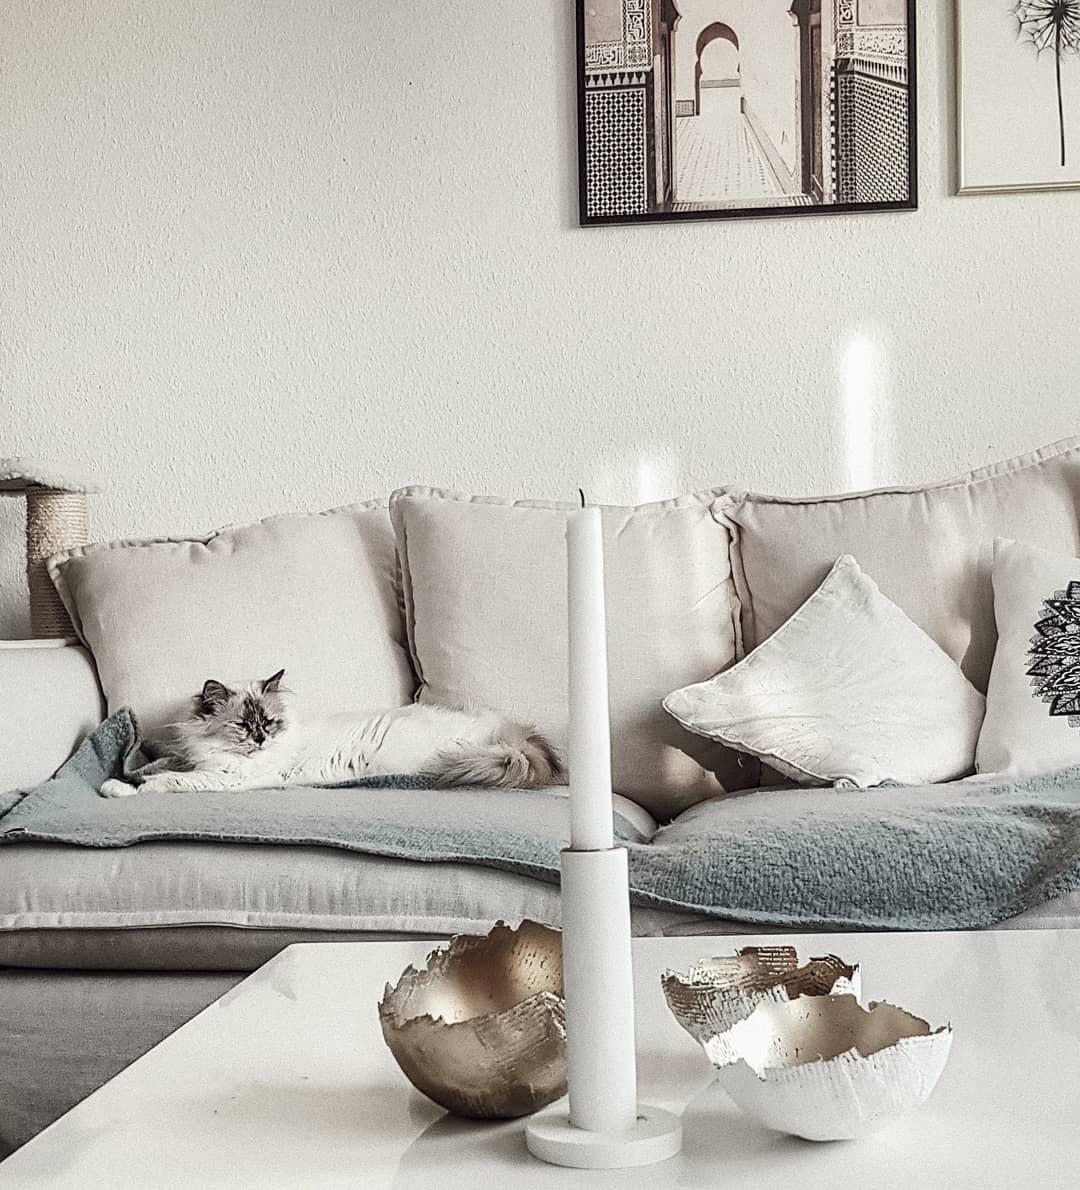 Wir wünschen euch einen schönen Sonntag ☀️ Hier schläft noch alles. Passt auf euch auf. 
#wohnzimmer #homestyle #couch 